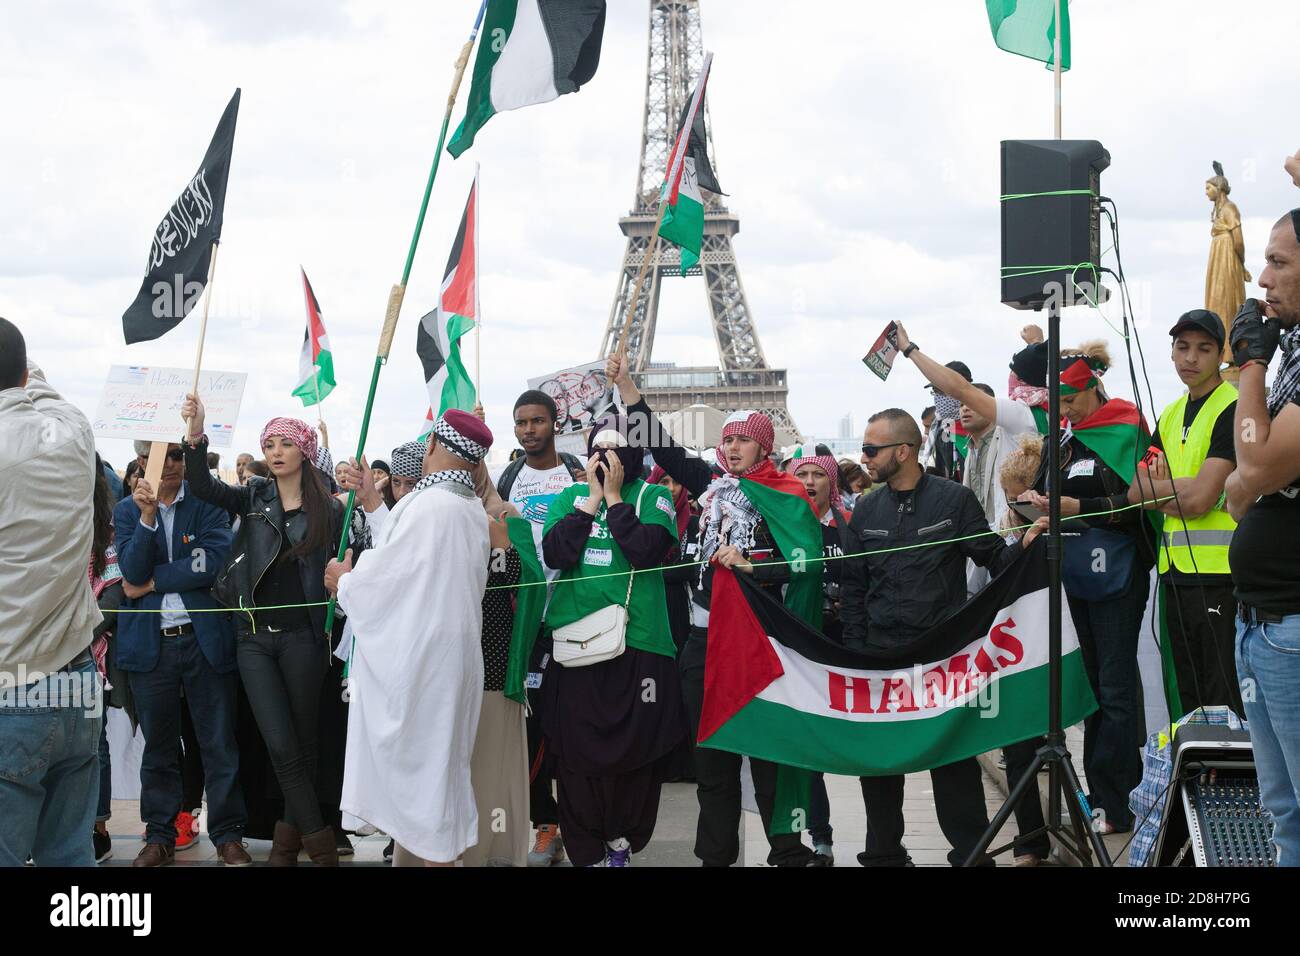 Daeh bandiera nera dello stato islamico di fronte La Torre eiffel in una manifestazione pro-palestinese al Trocadero di Parigi Francia Foto Stock